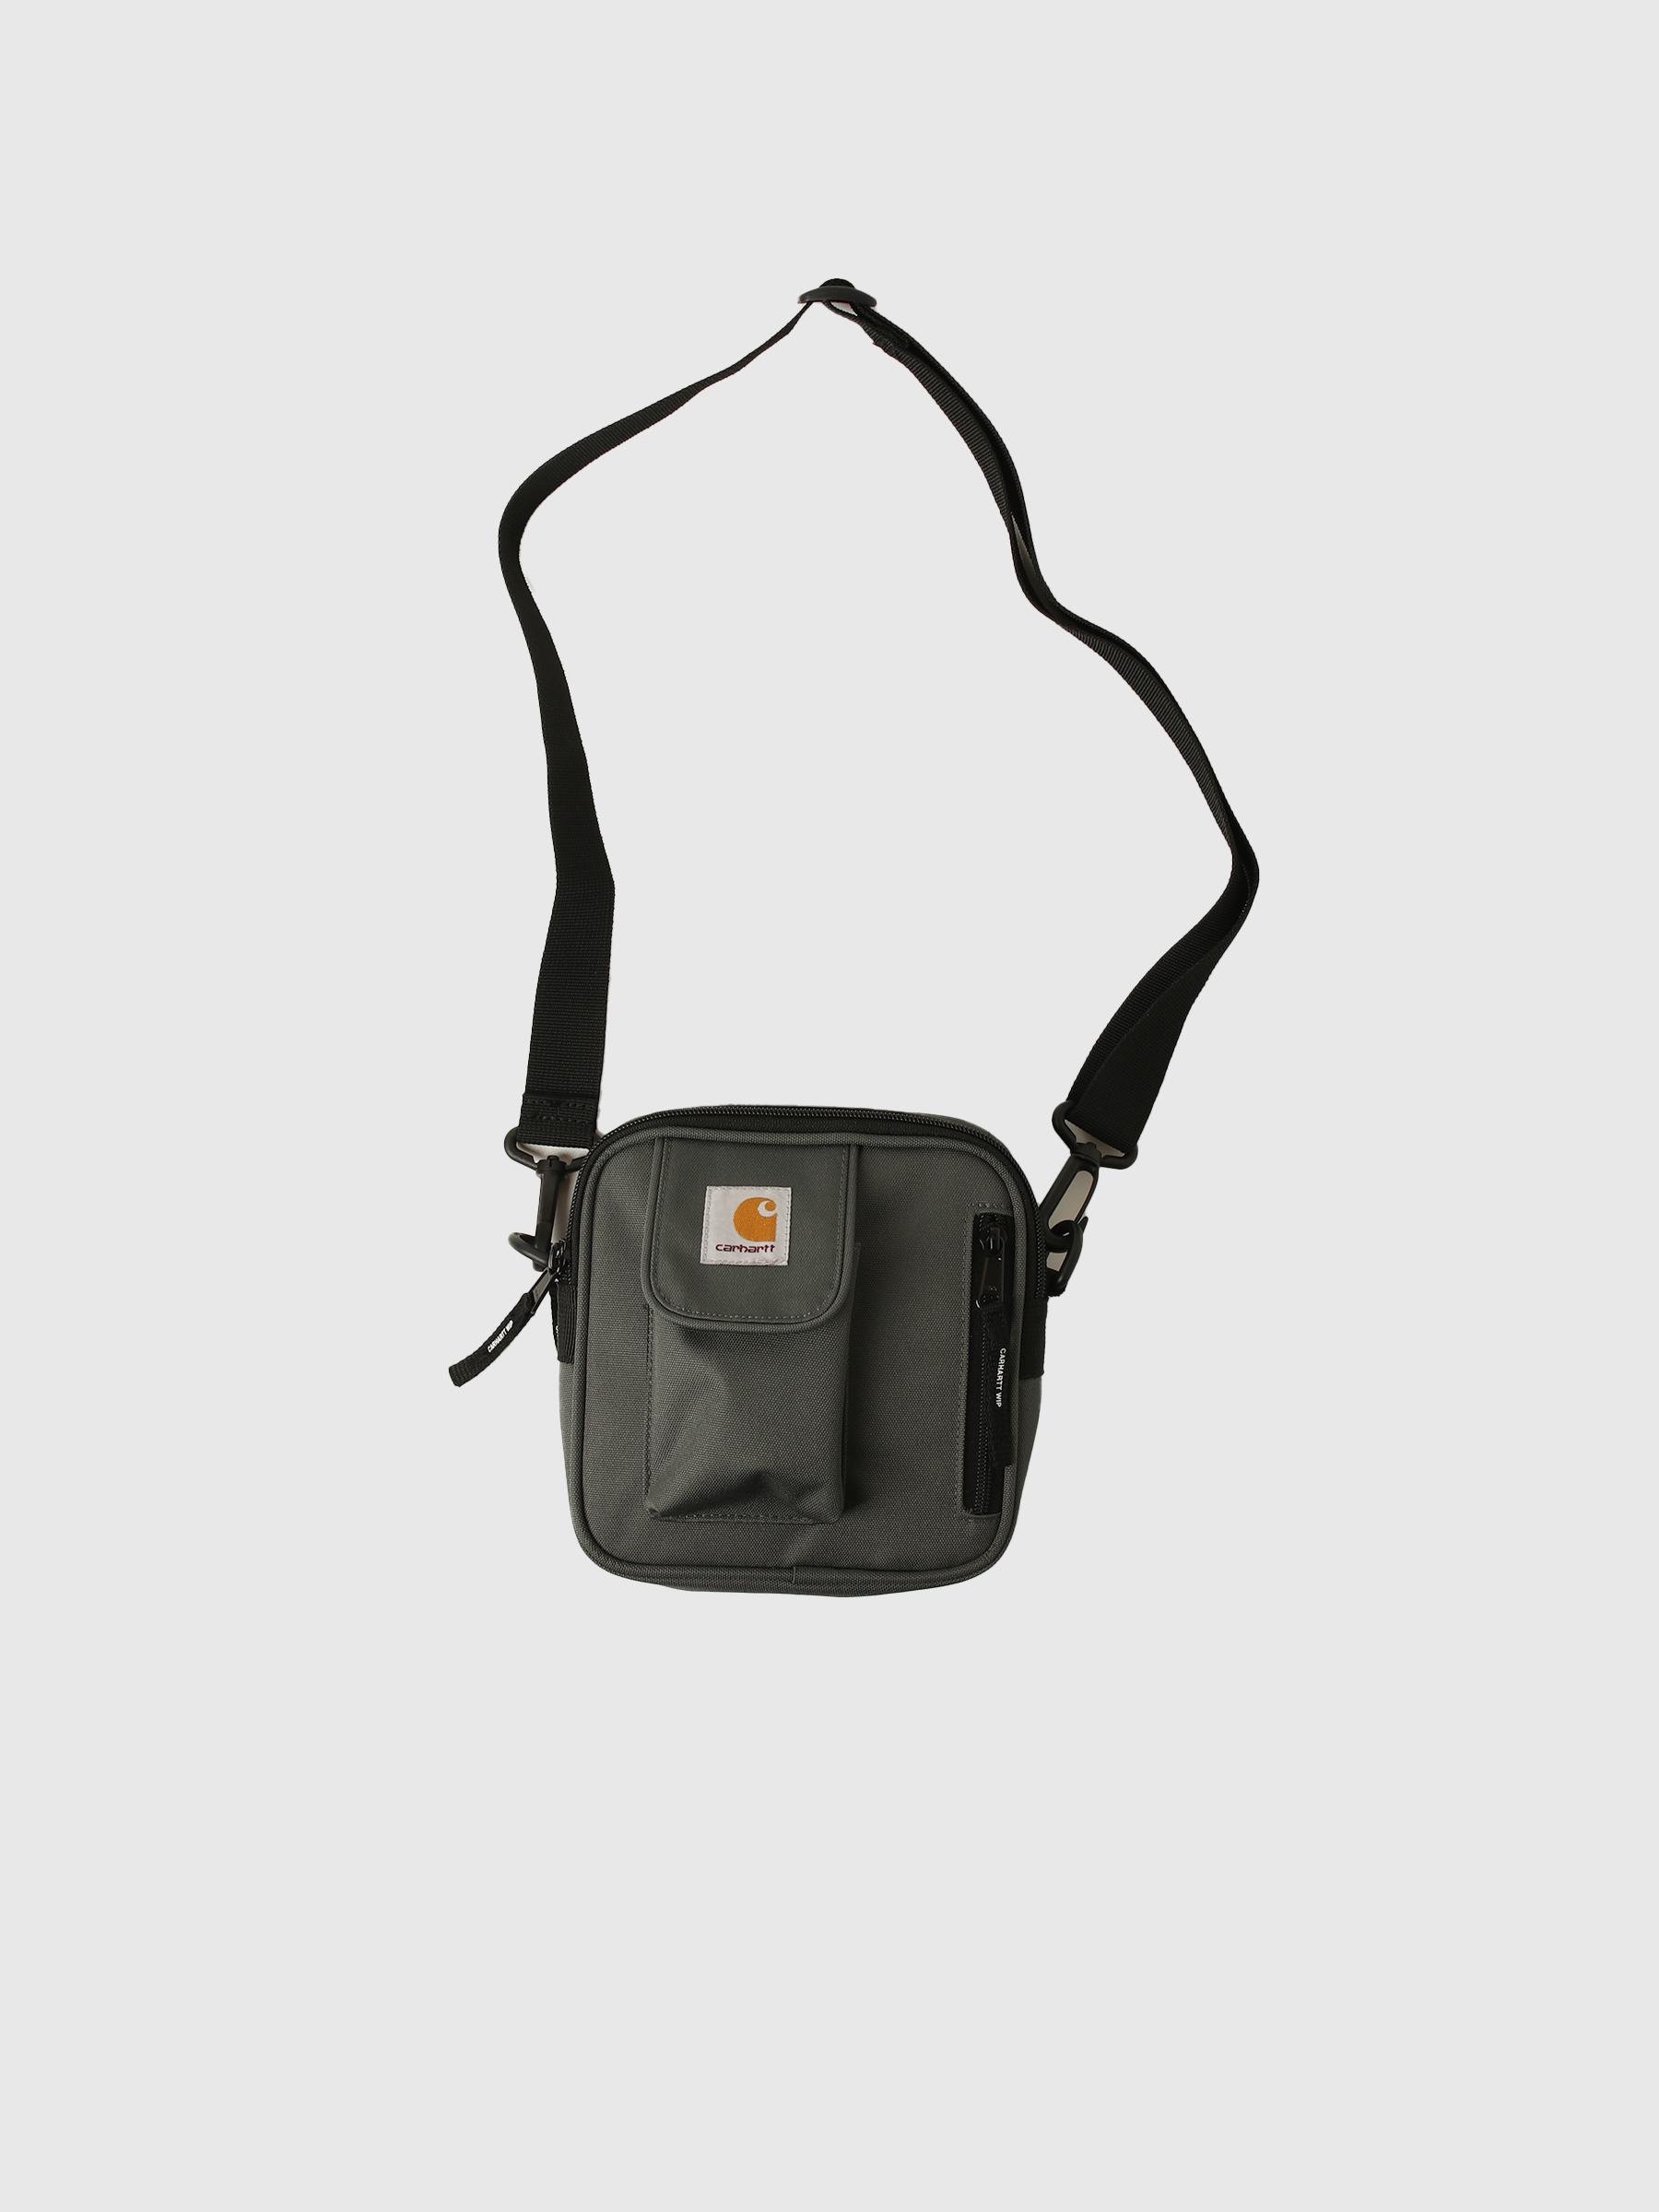 Carhartt wip small essentials bag black - unisex shoulder bag